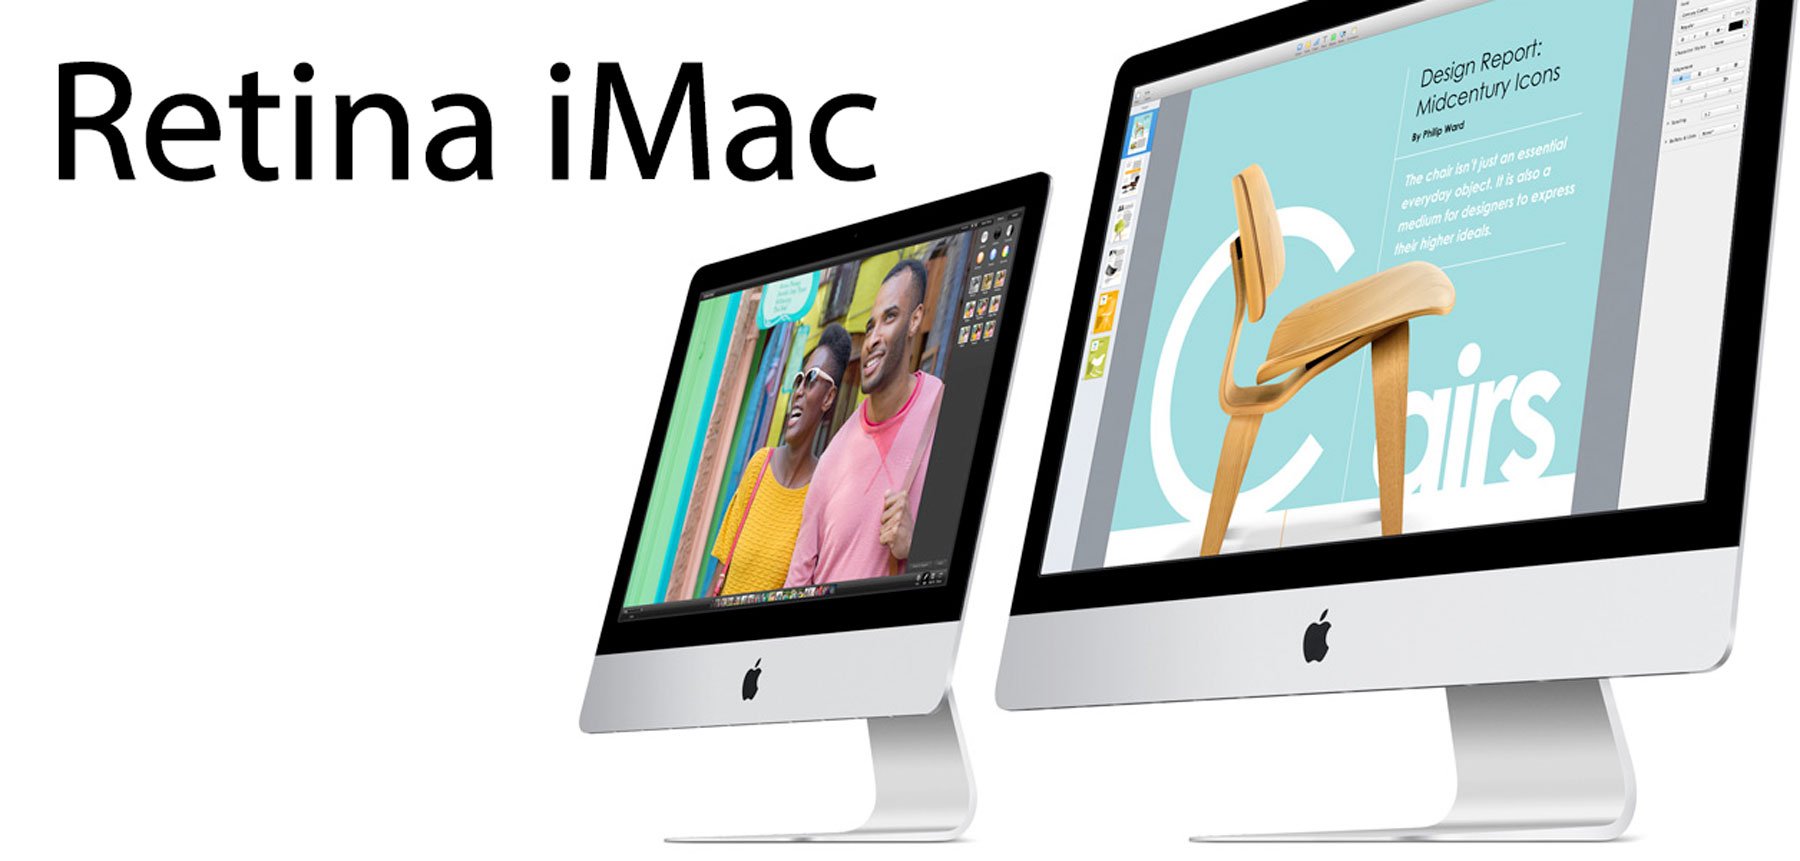 Retina iMac kommt, Retina MacBook Air später 10